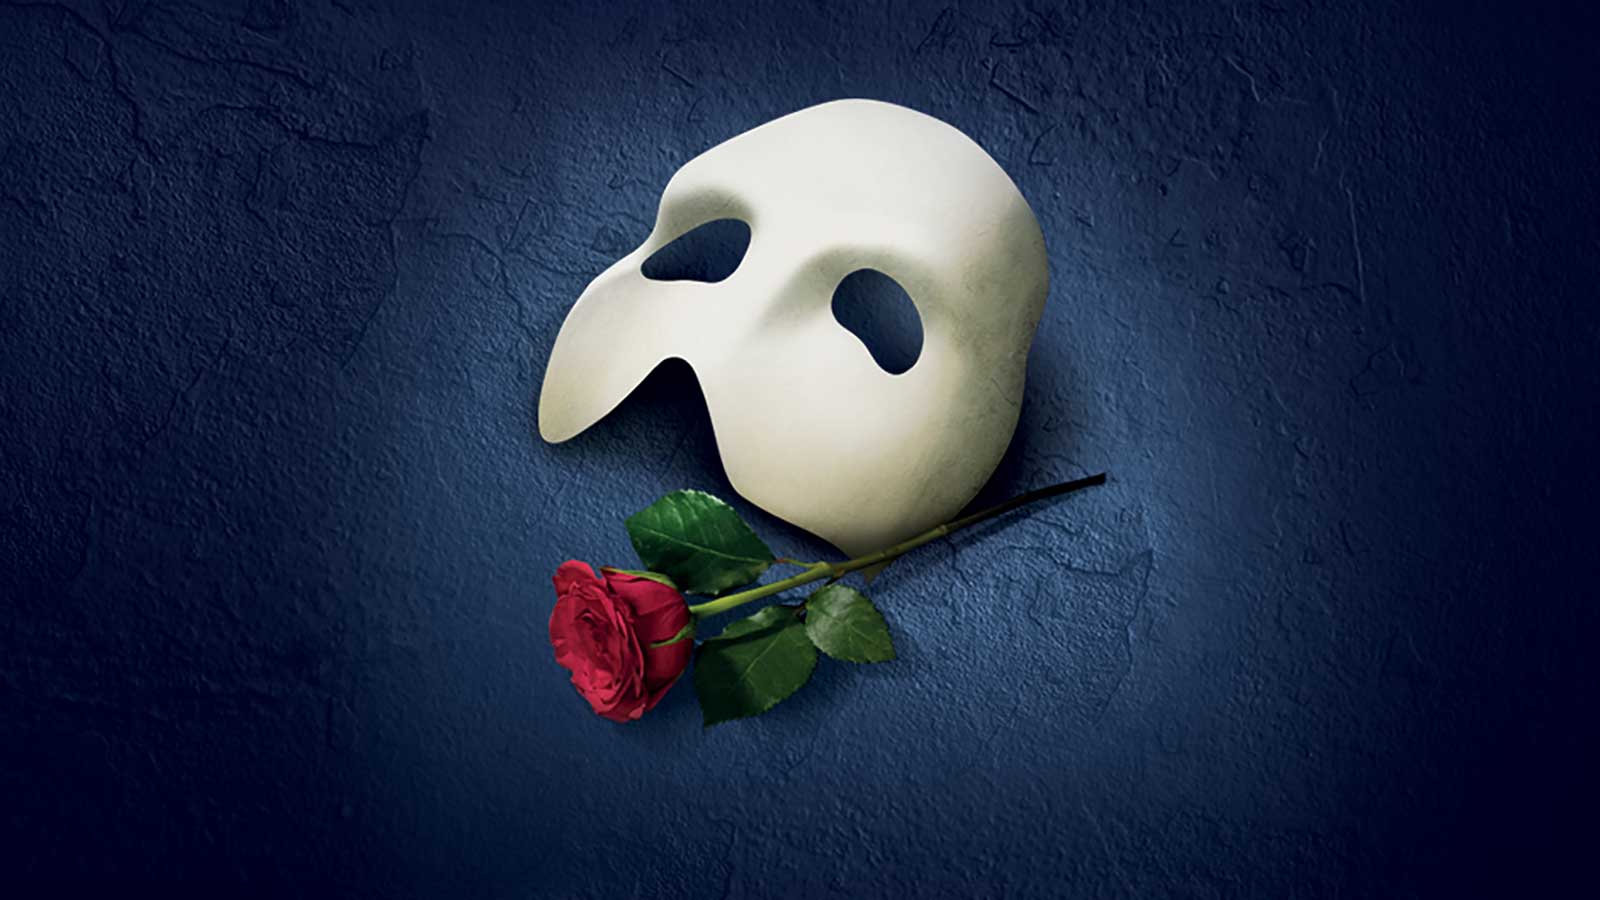 The Phantom Of The Opera show artwork